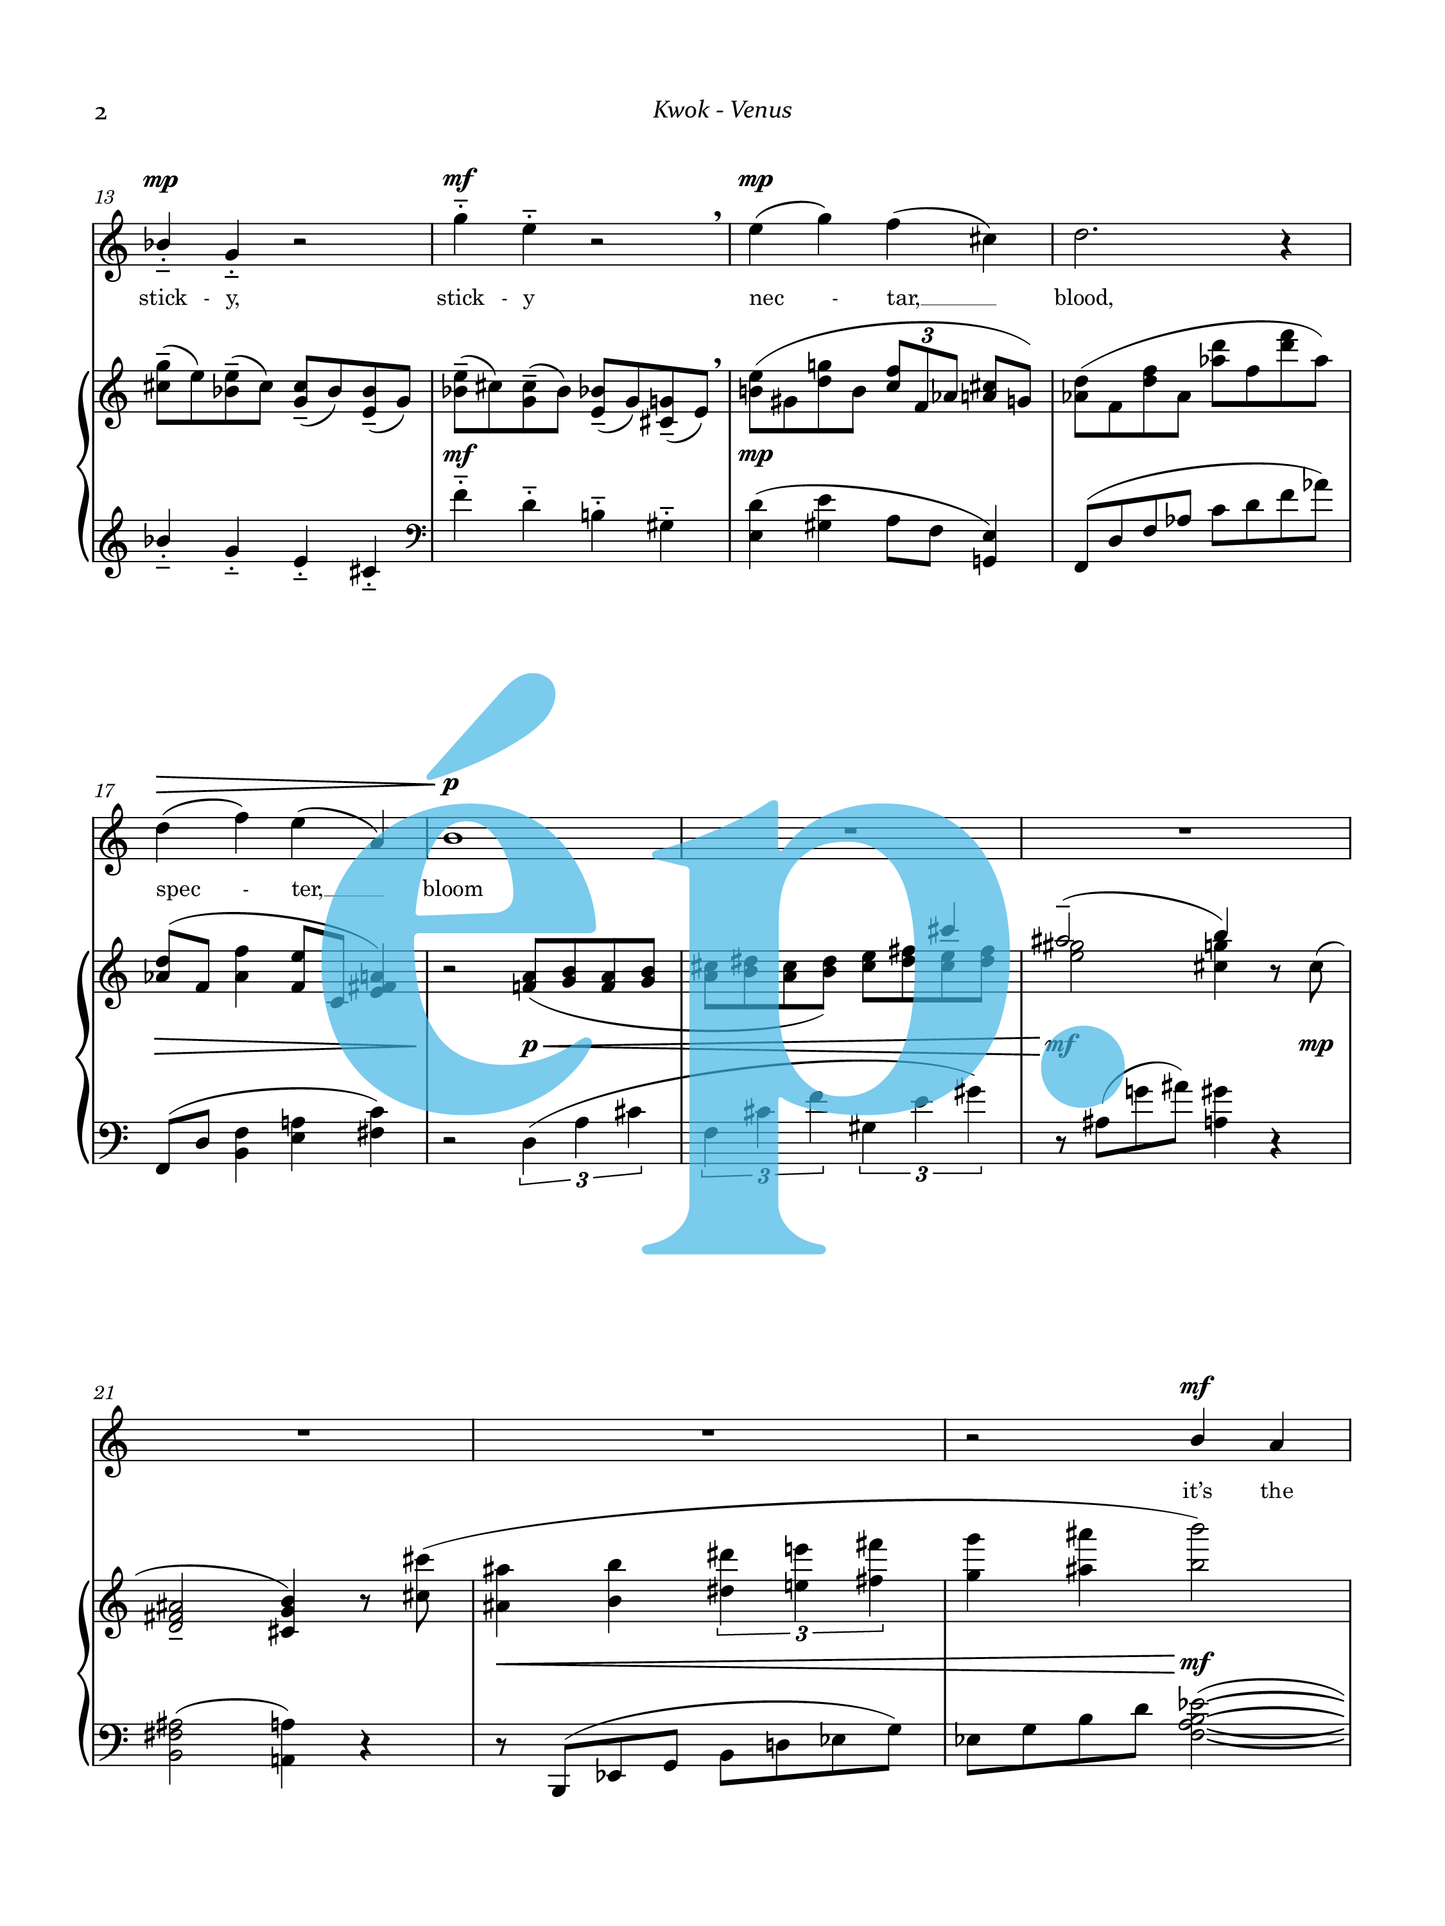 Venus for soprano and piano [Digital Download]